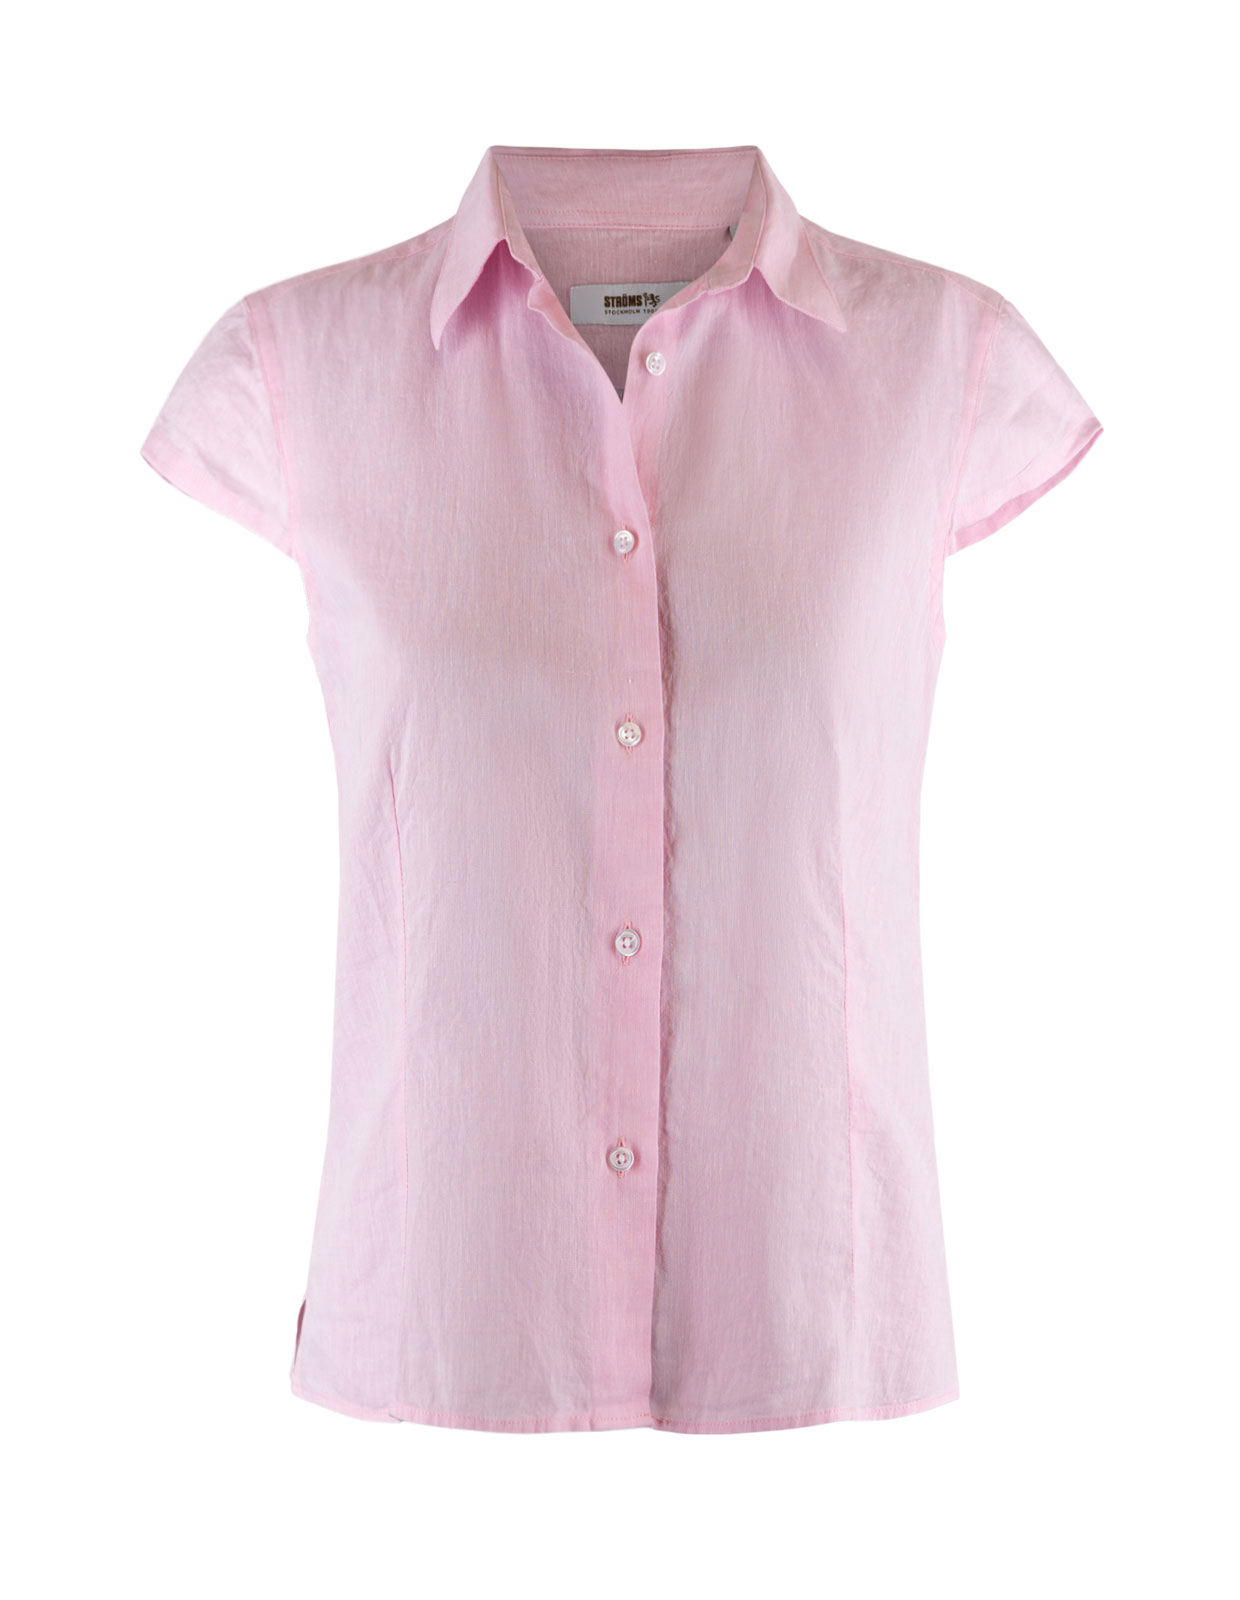 Linnen Shirt Cap Sleeve Lt Pink